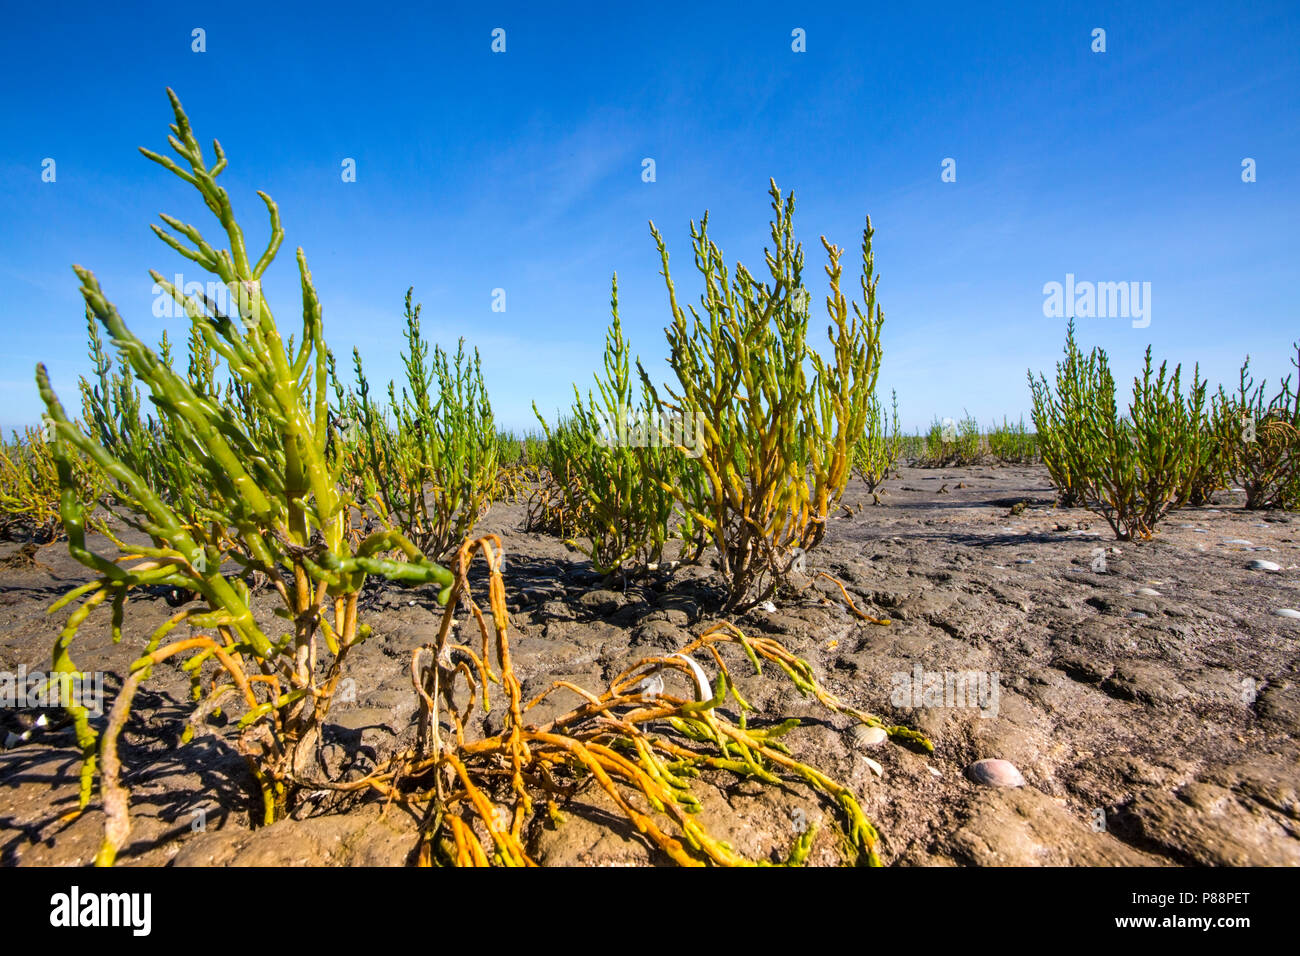 Langarige zeekraal, Long-spiked Glasswort Stock Photo